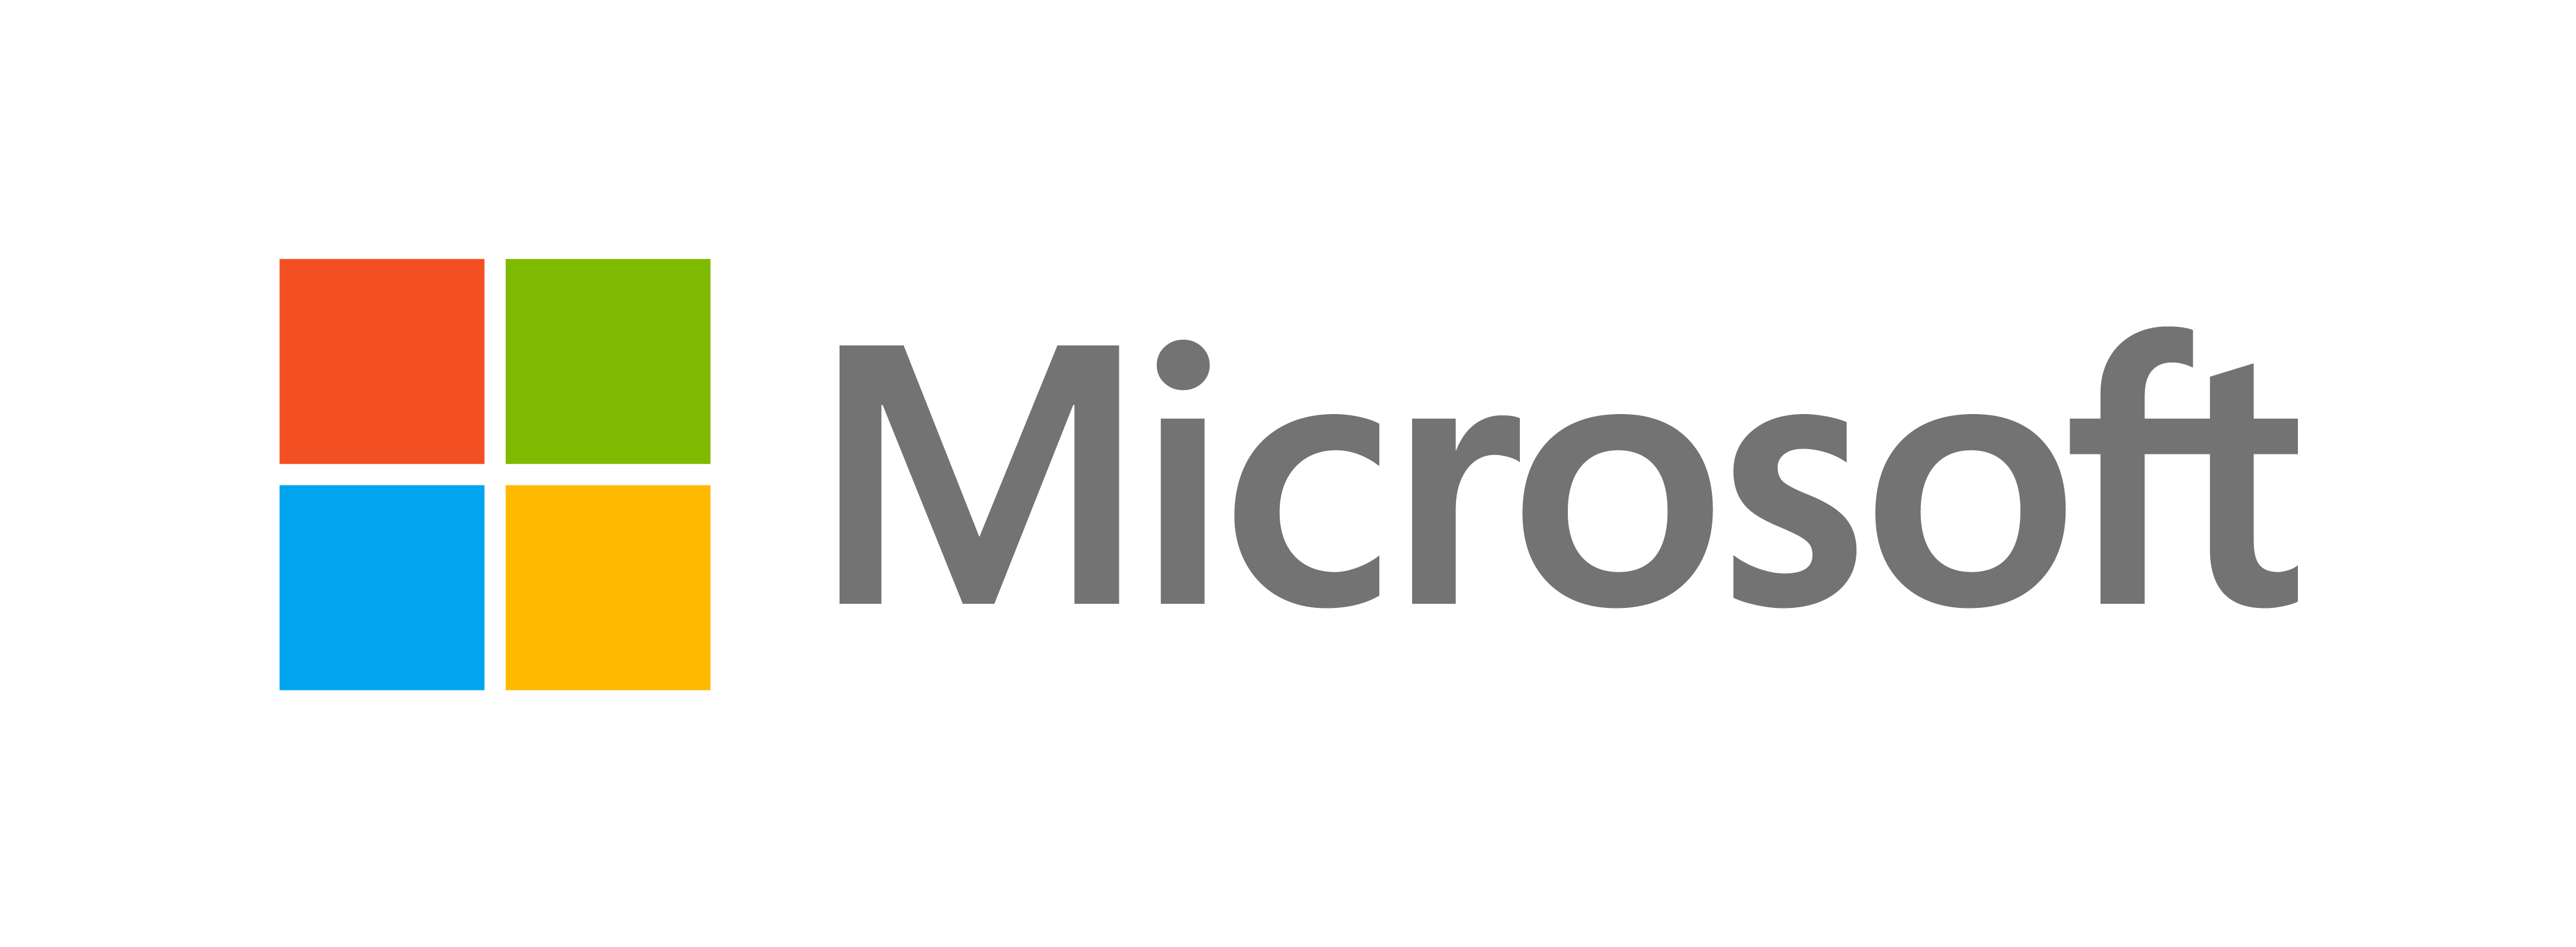 Корпорація Майкрософт представляє новий вигляд - Офіційний блог Microsoft